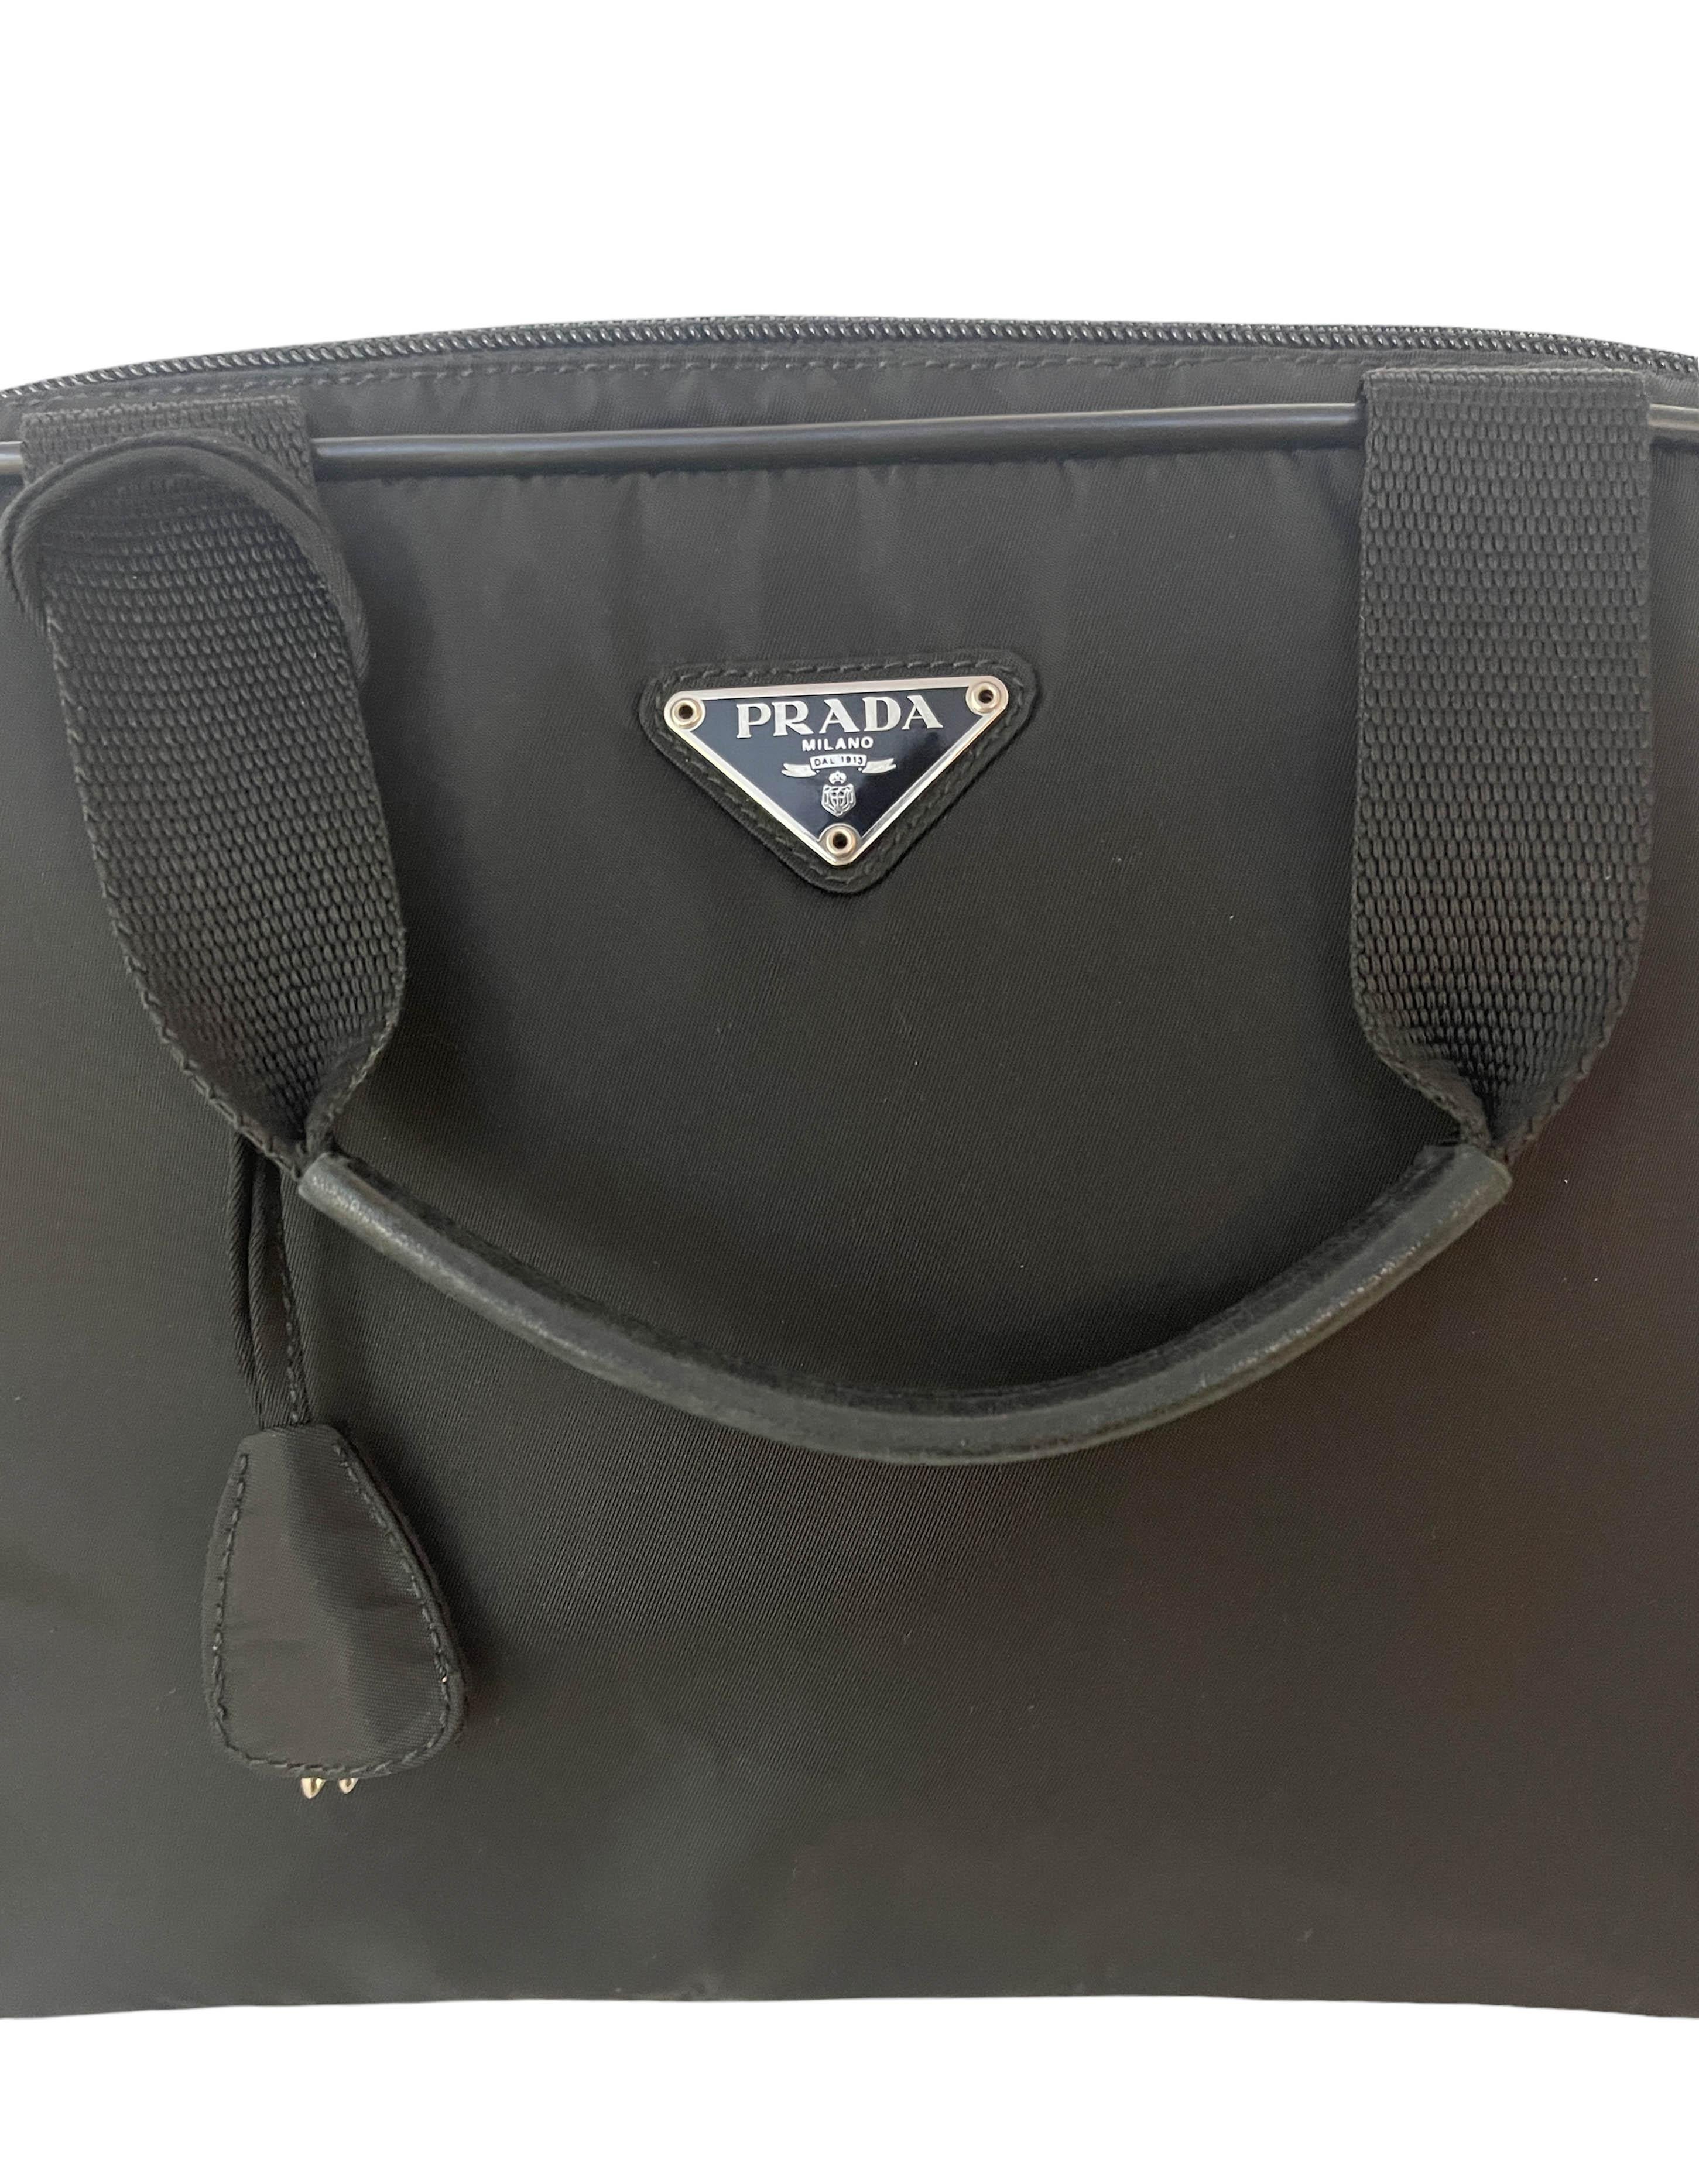 Prada Vintage Black Tessuto Nylon Handbag 1